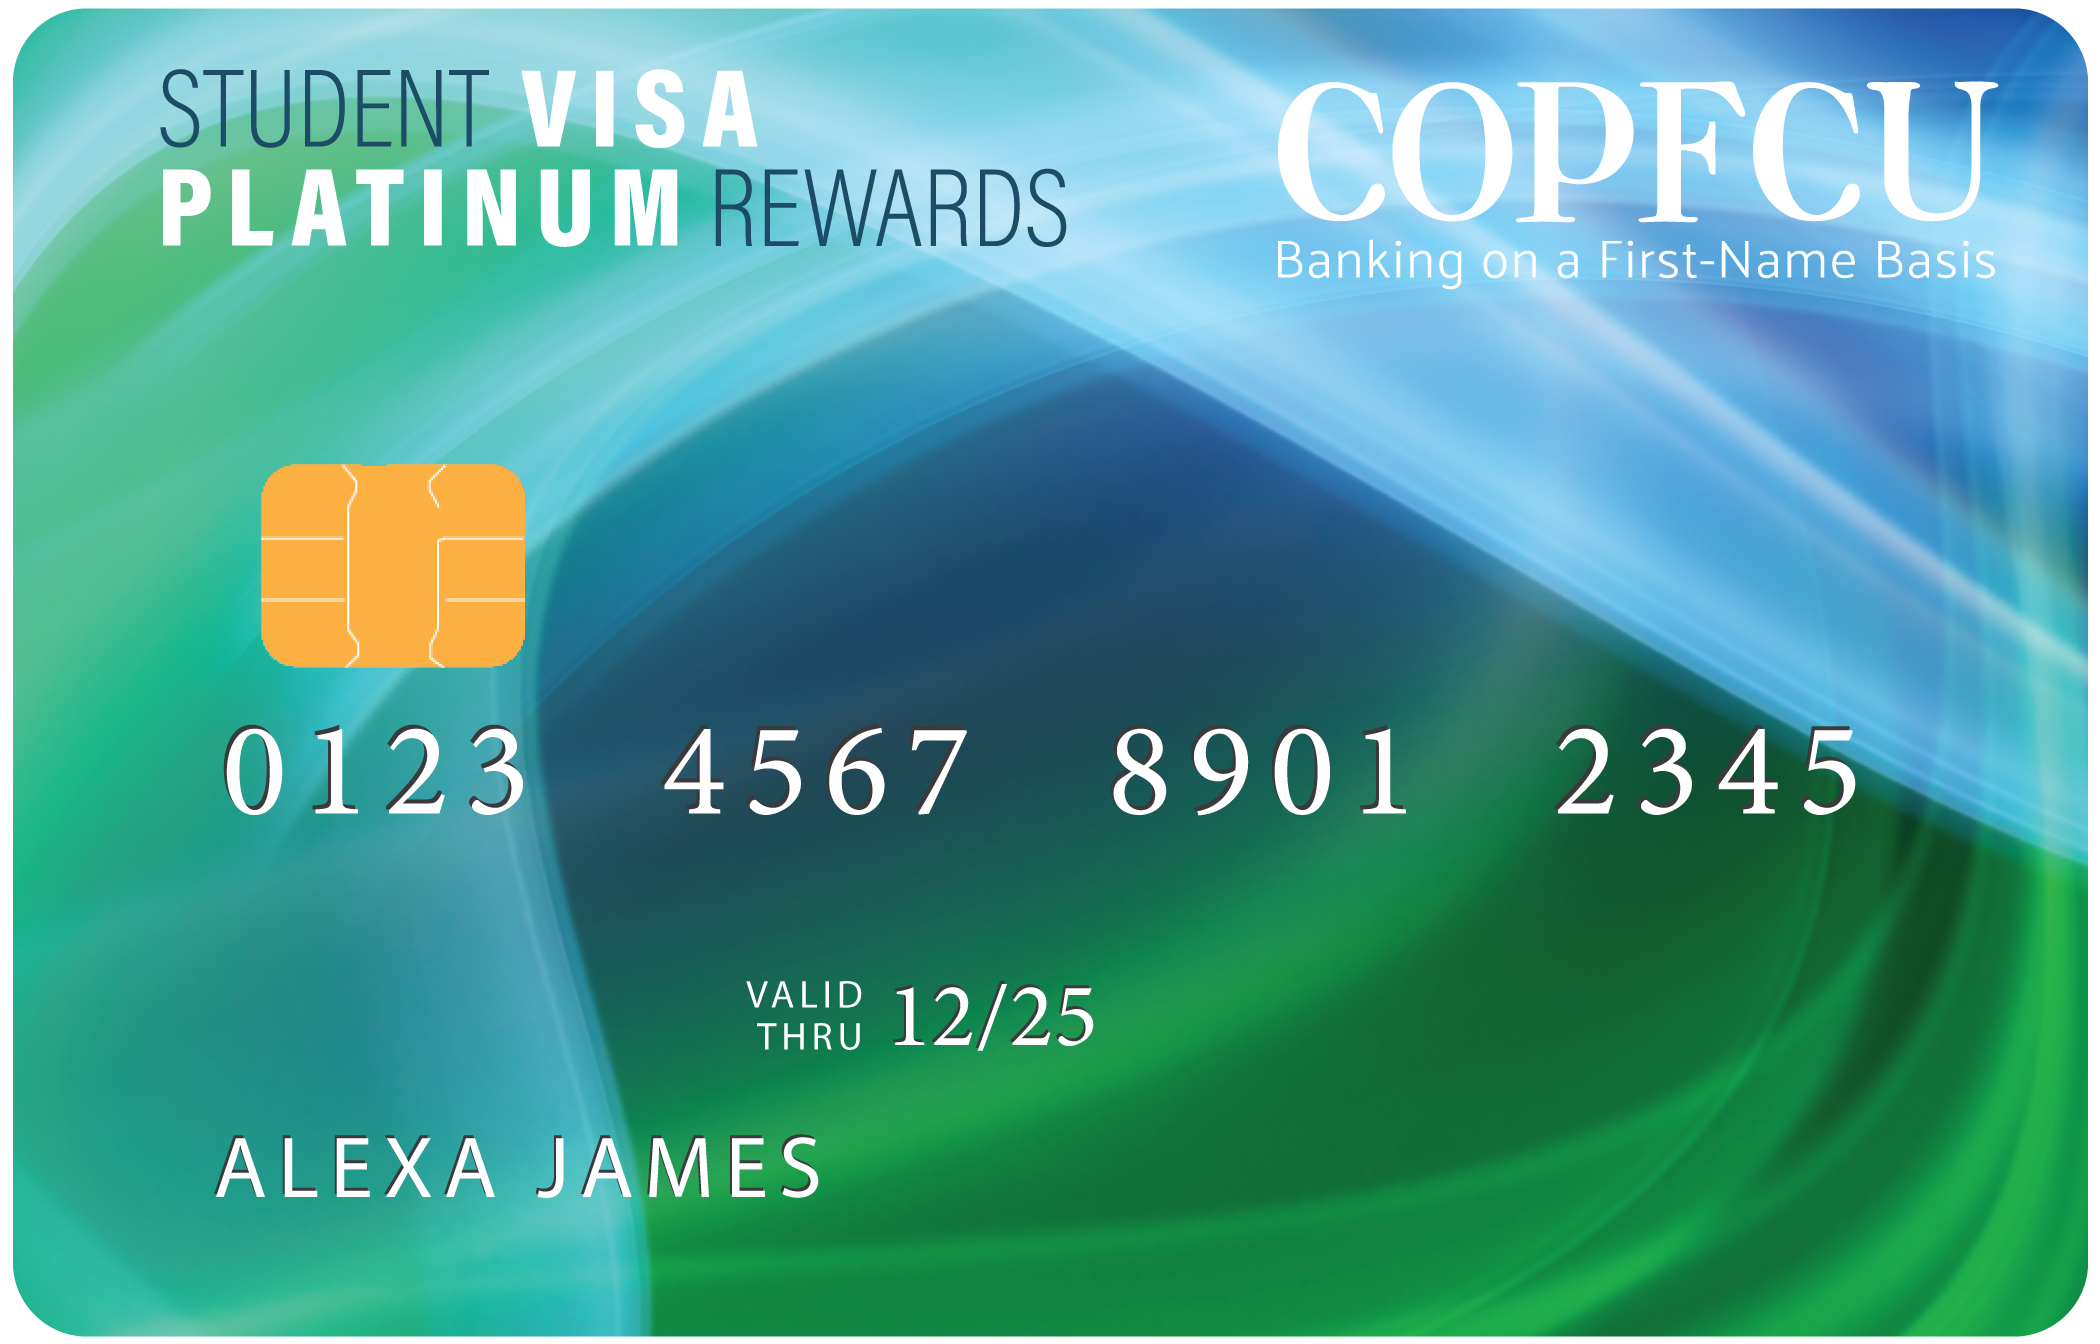 COPFCU Student Visa Platinum Rewards